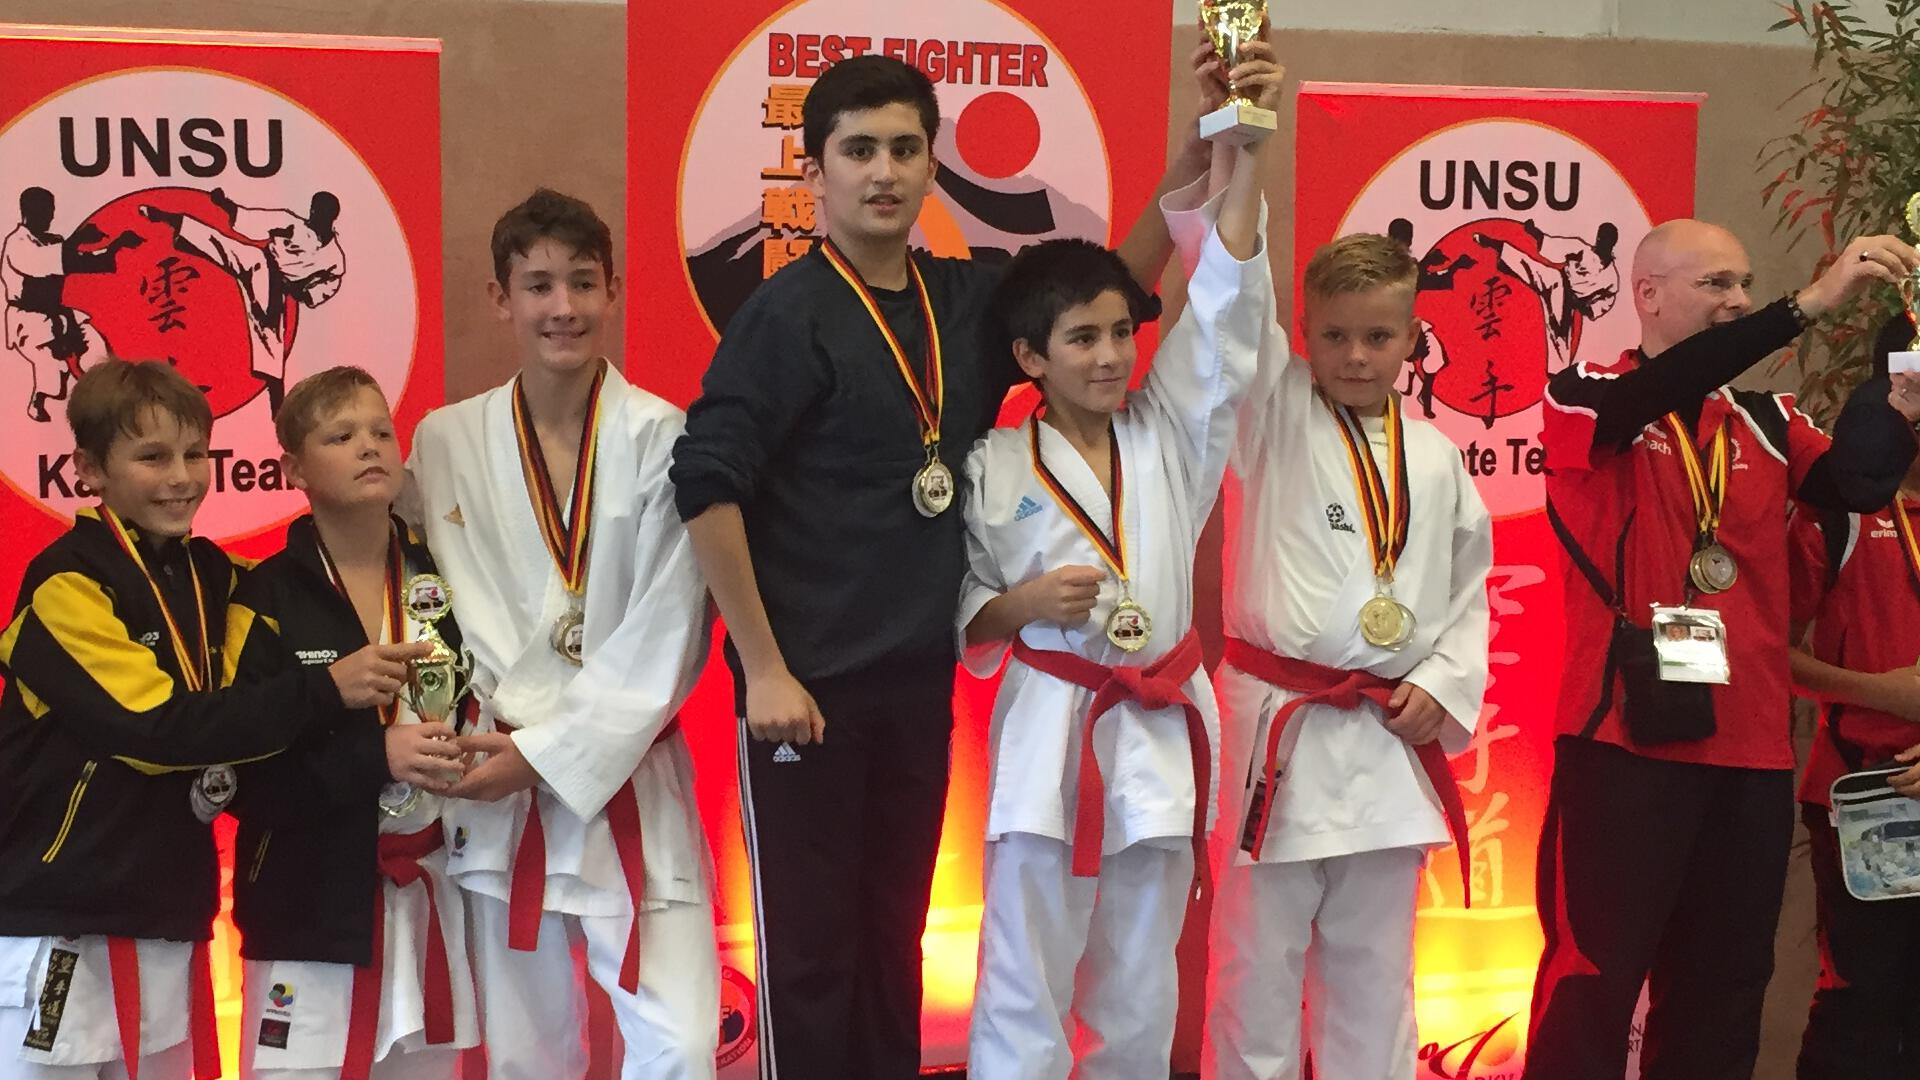 Bestleistung beim Best Fighter Karate Cup